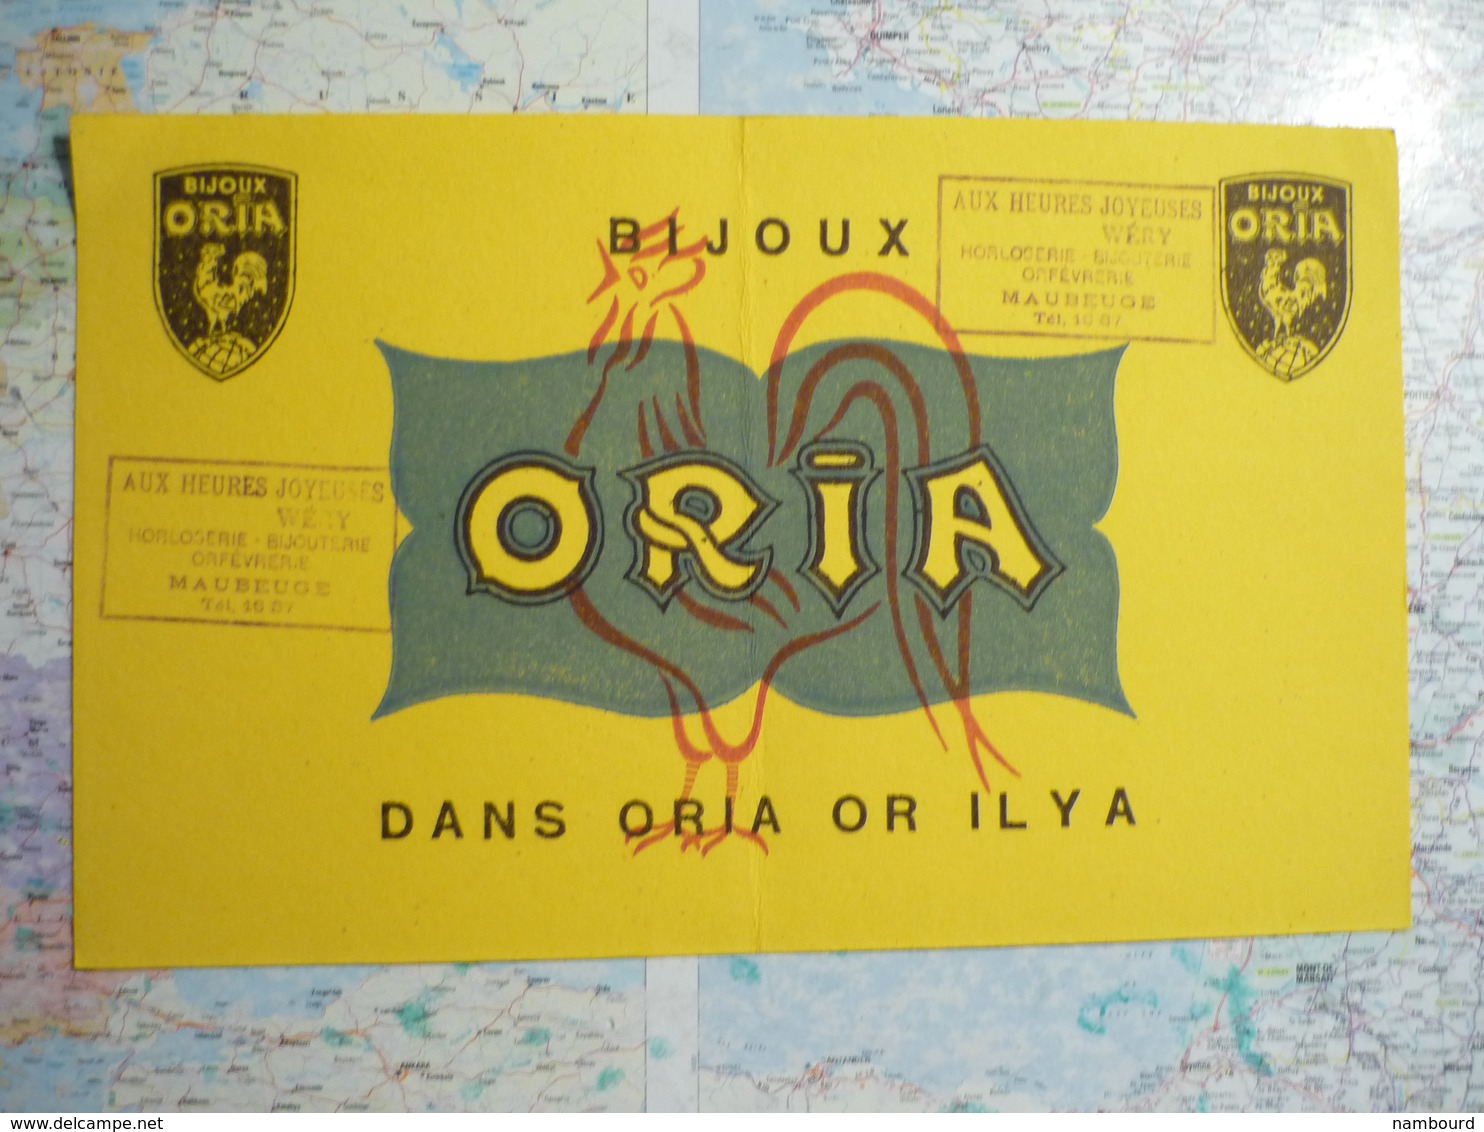 Bijoux Oria - O